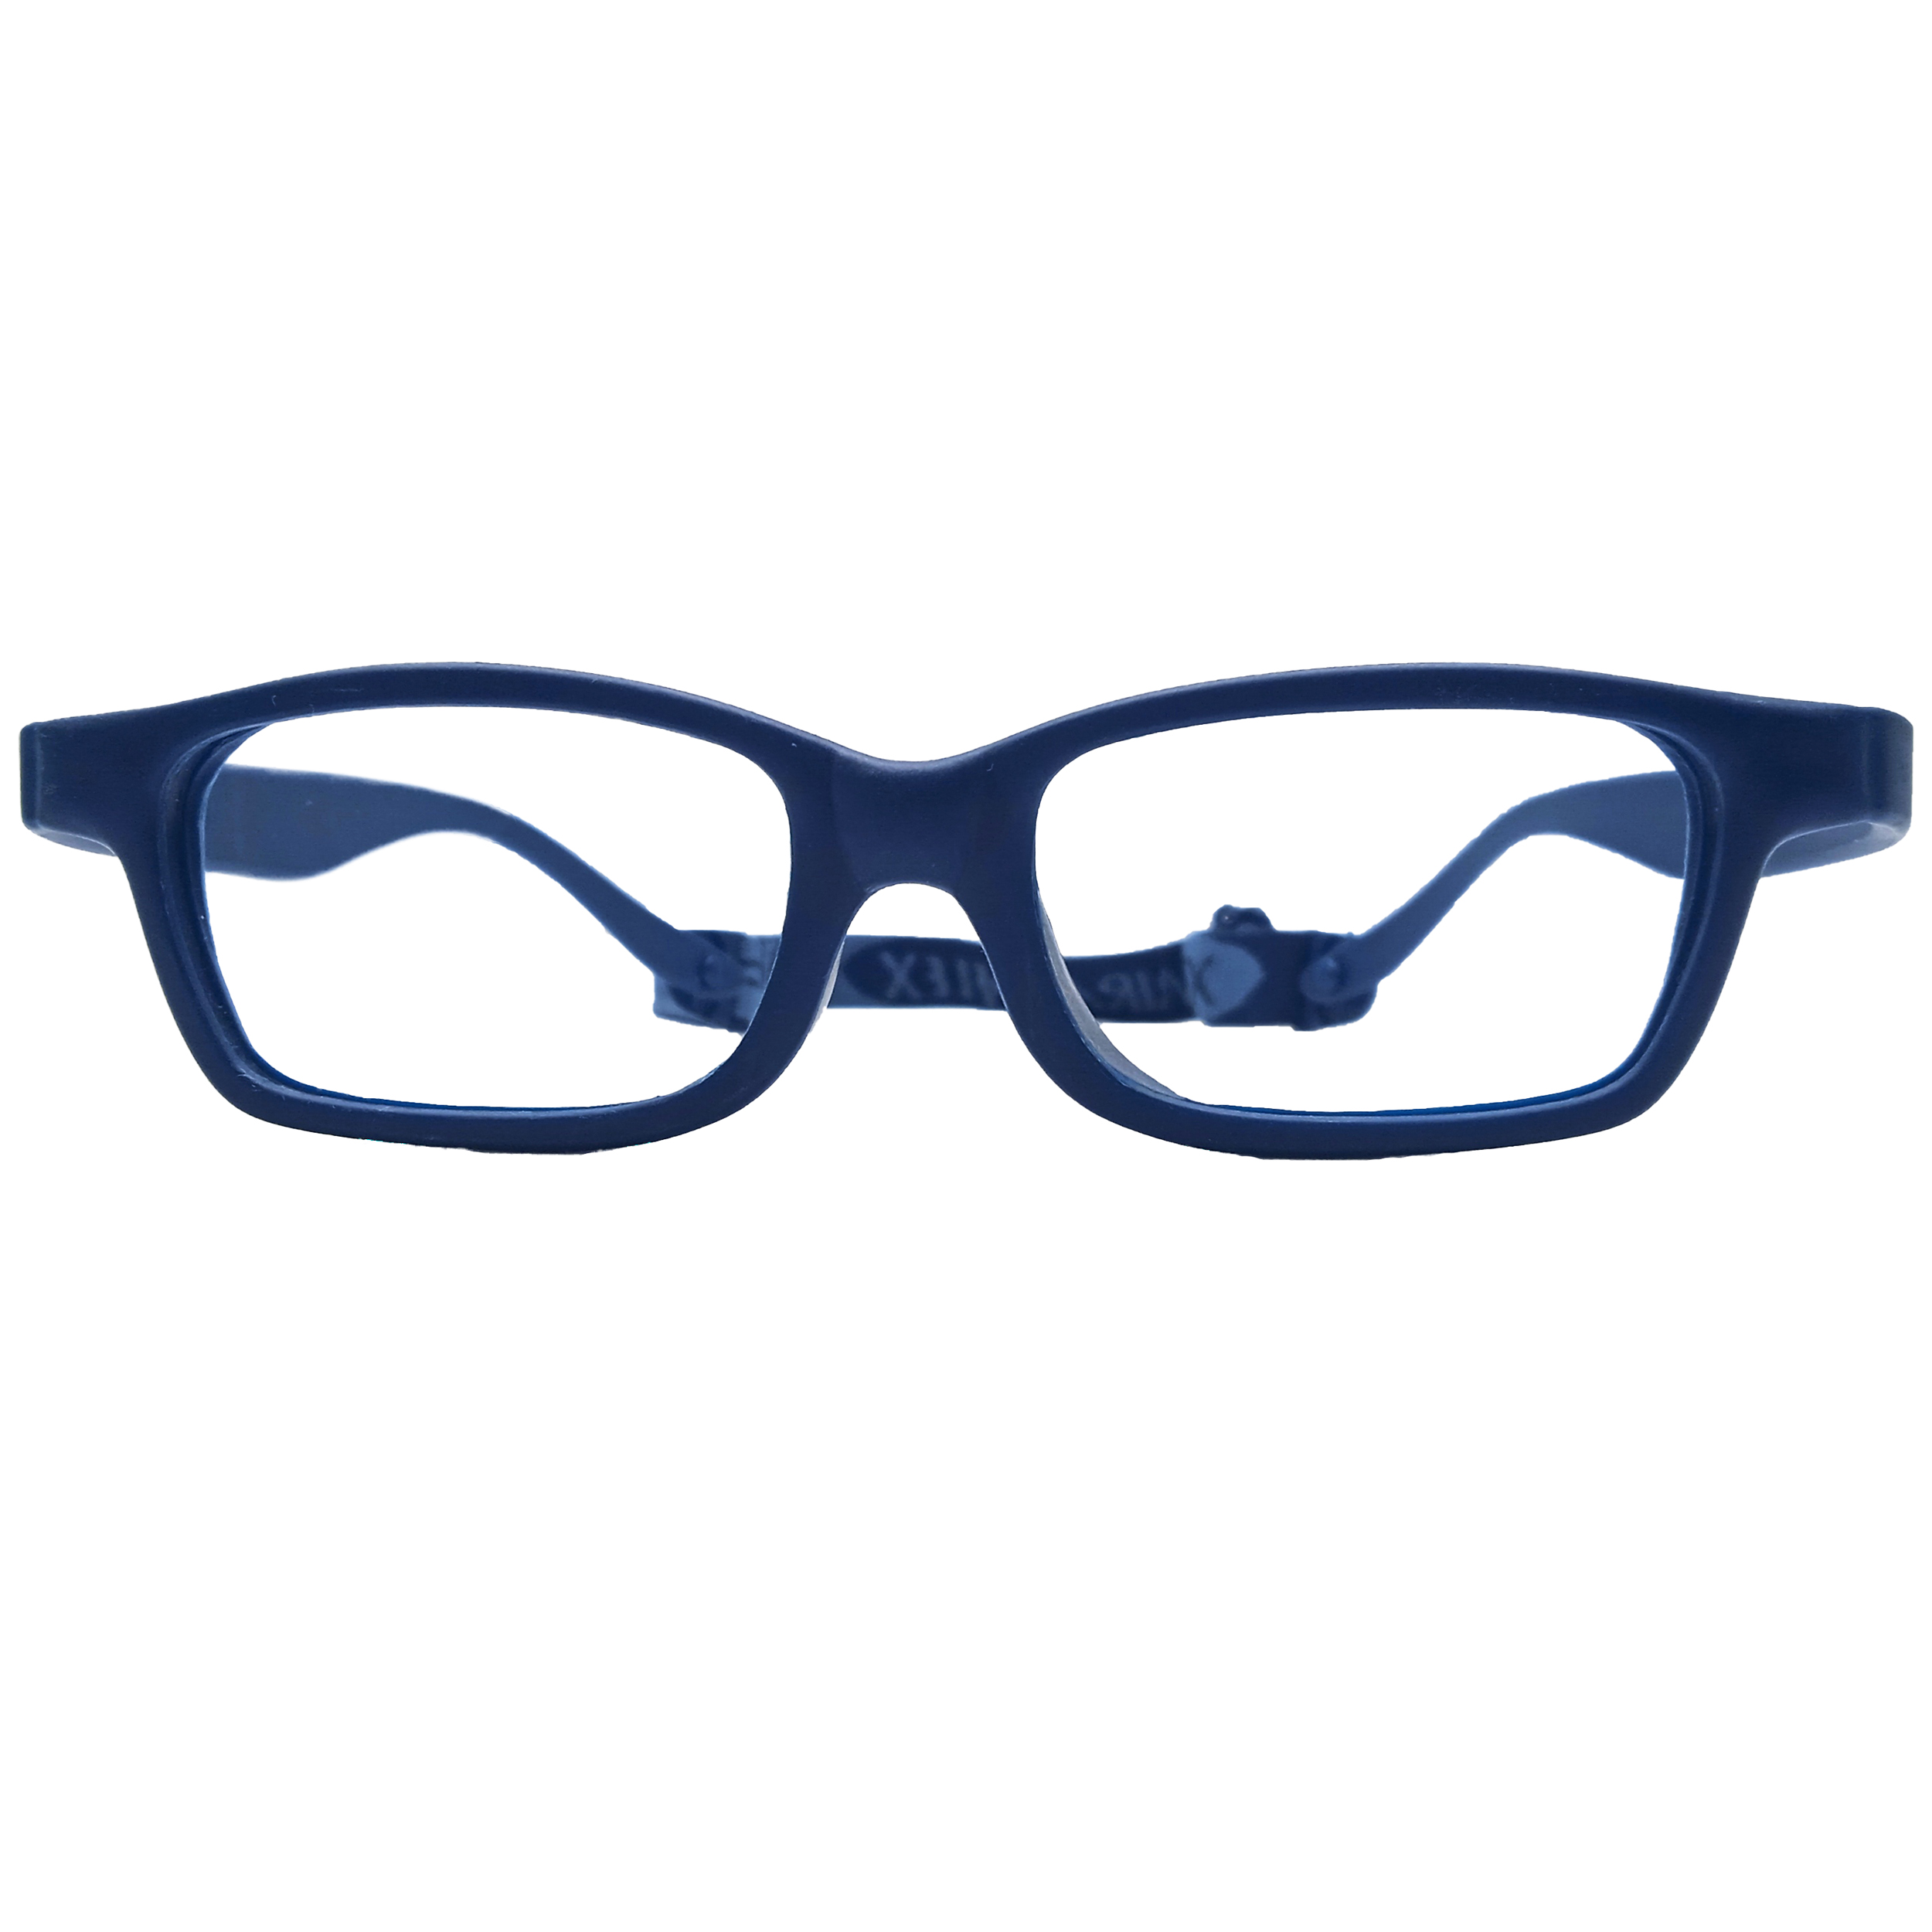 فریم عینک طبی بچگانه میرافلکس مدل ژله ای مایان 1